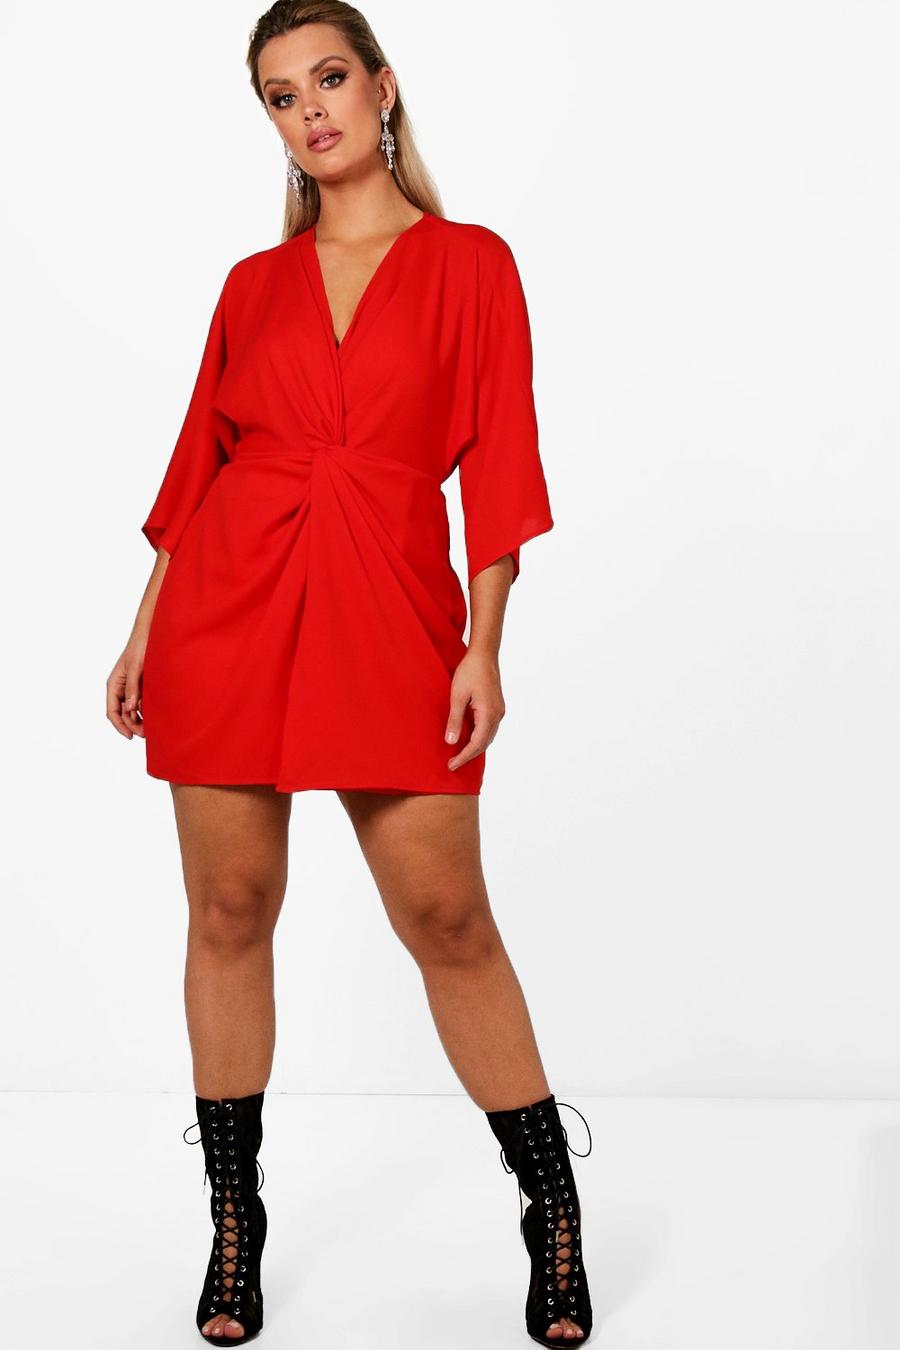 אדום rosso שמלה עם עיטור קשר ושרוולי 3/4 מידות גדולות